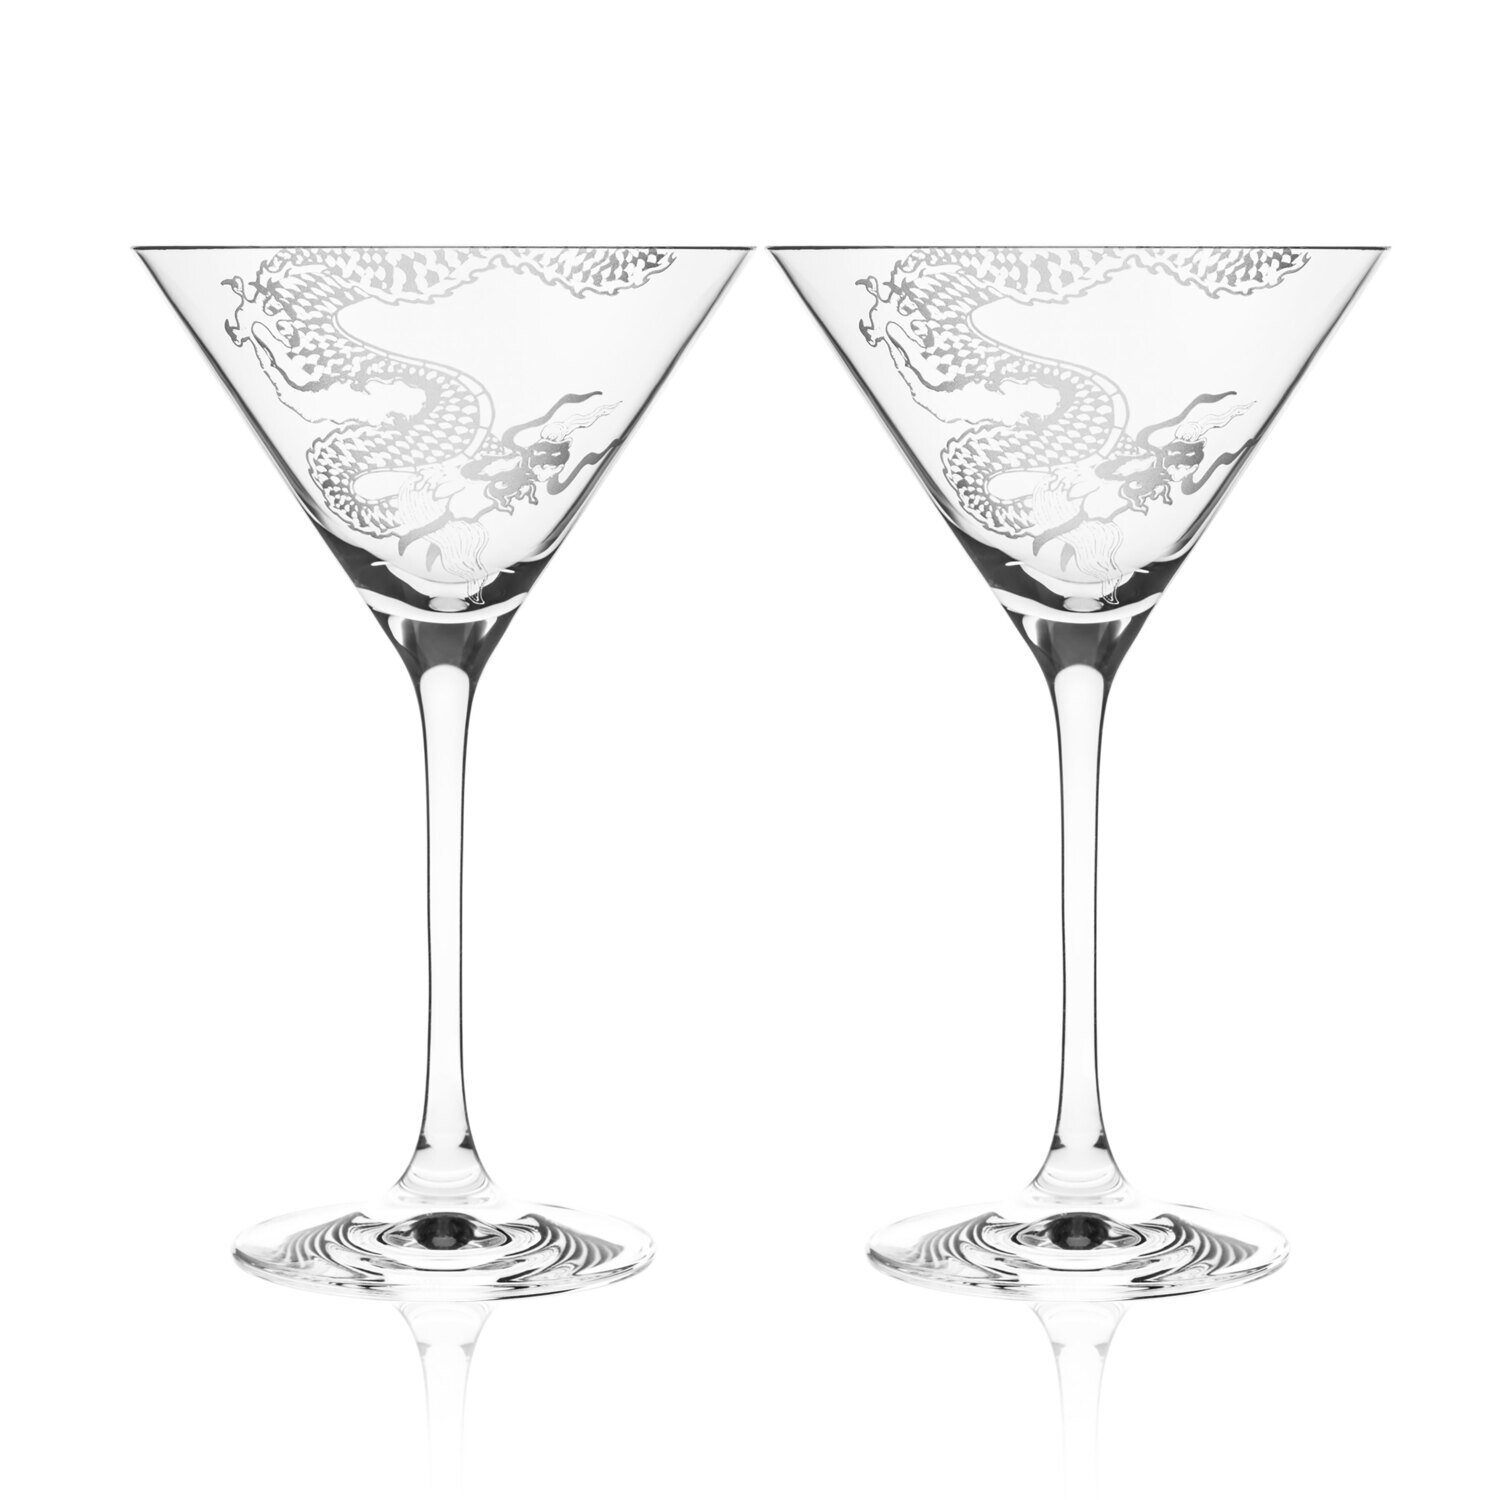 Caskata Dragon Martini Glasses Set of 2 GL-MARTINI-381